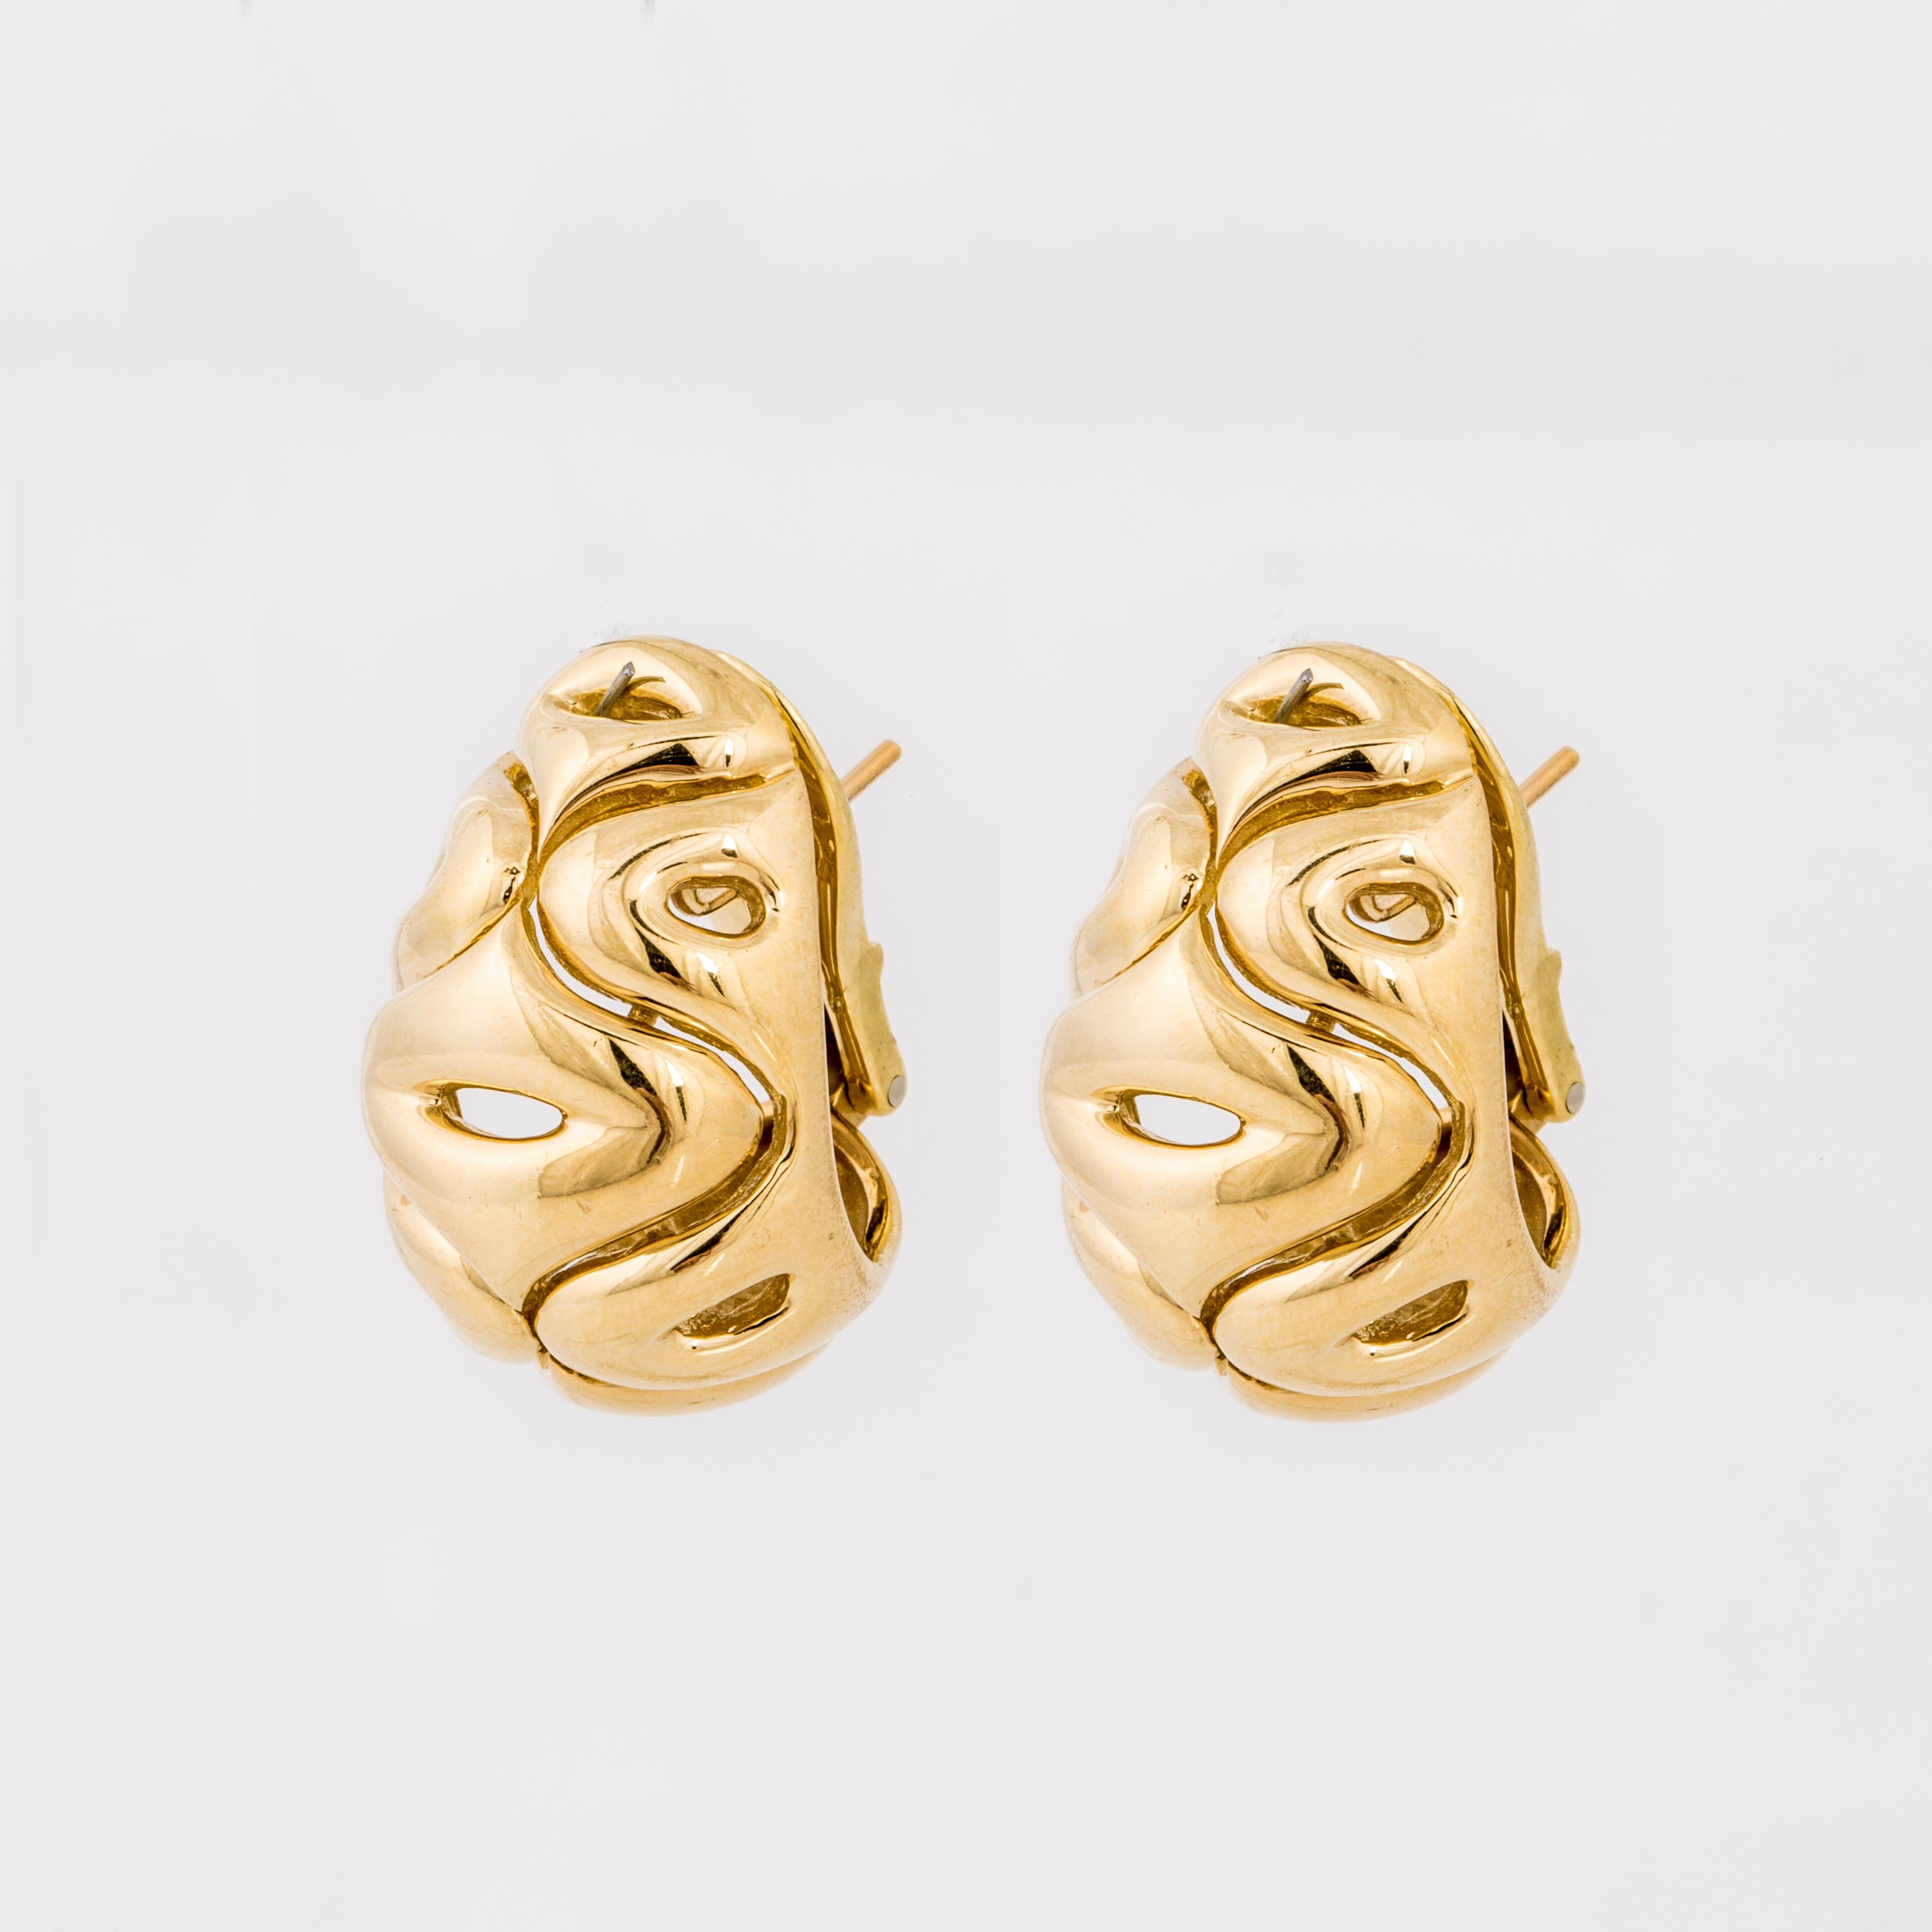 Van Cleef & Arpels-Ohrringe aus 18 Karat Gelbgold mit Wirbelmuster. Sie sind für durchstochene Ohren mit Hebelverschluss.  Messen Sie 1 Zoll lang und 3/4 Zoll breit.  Seriennummer: NY3K750-10.